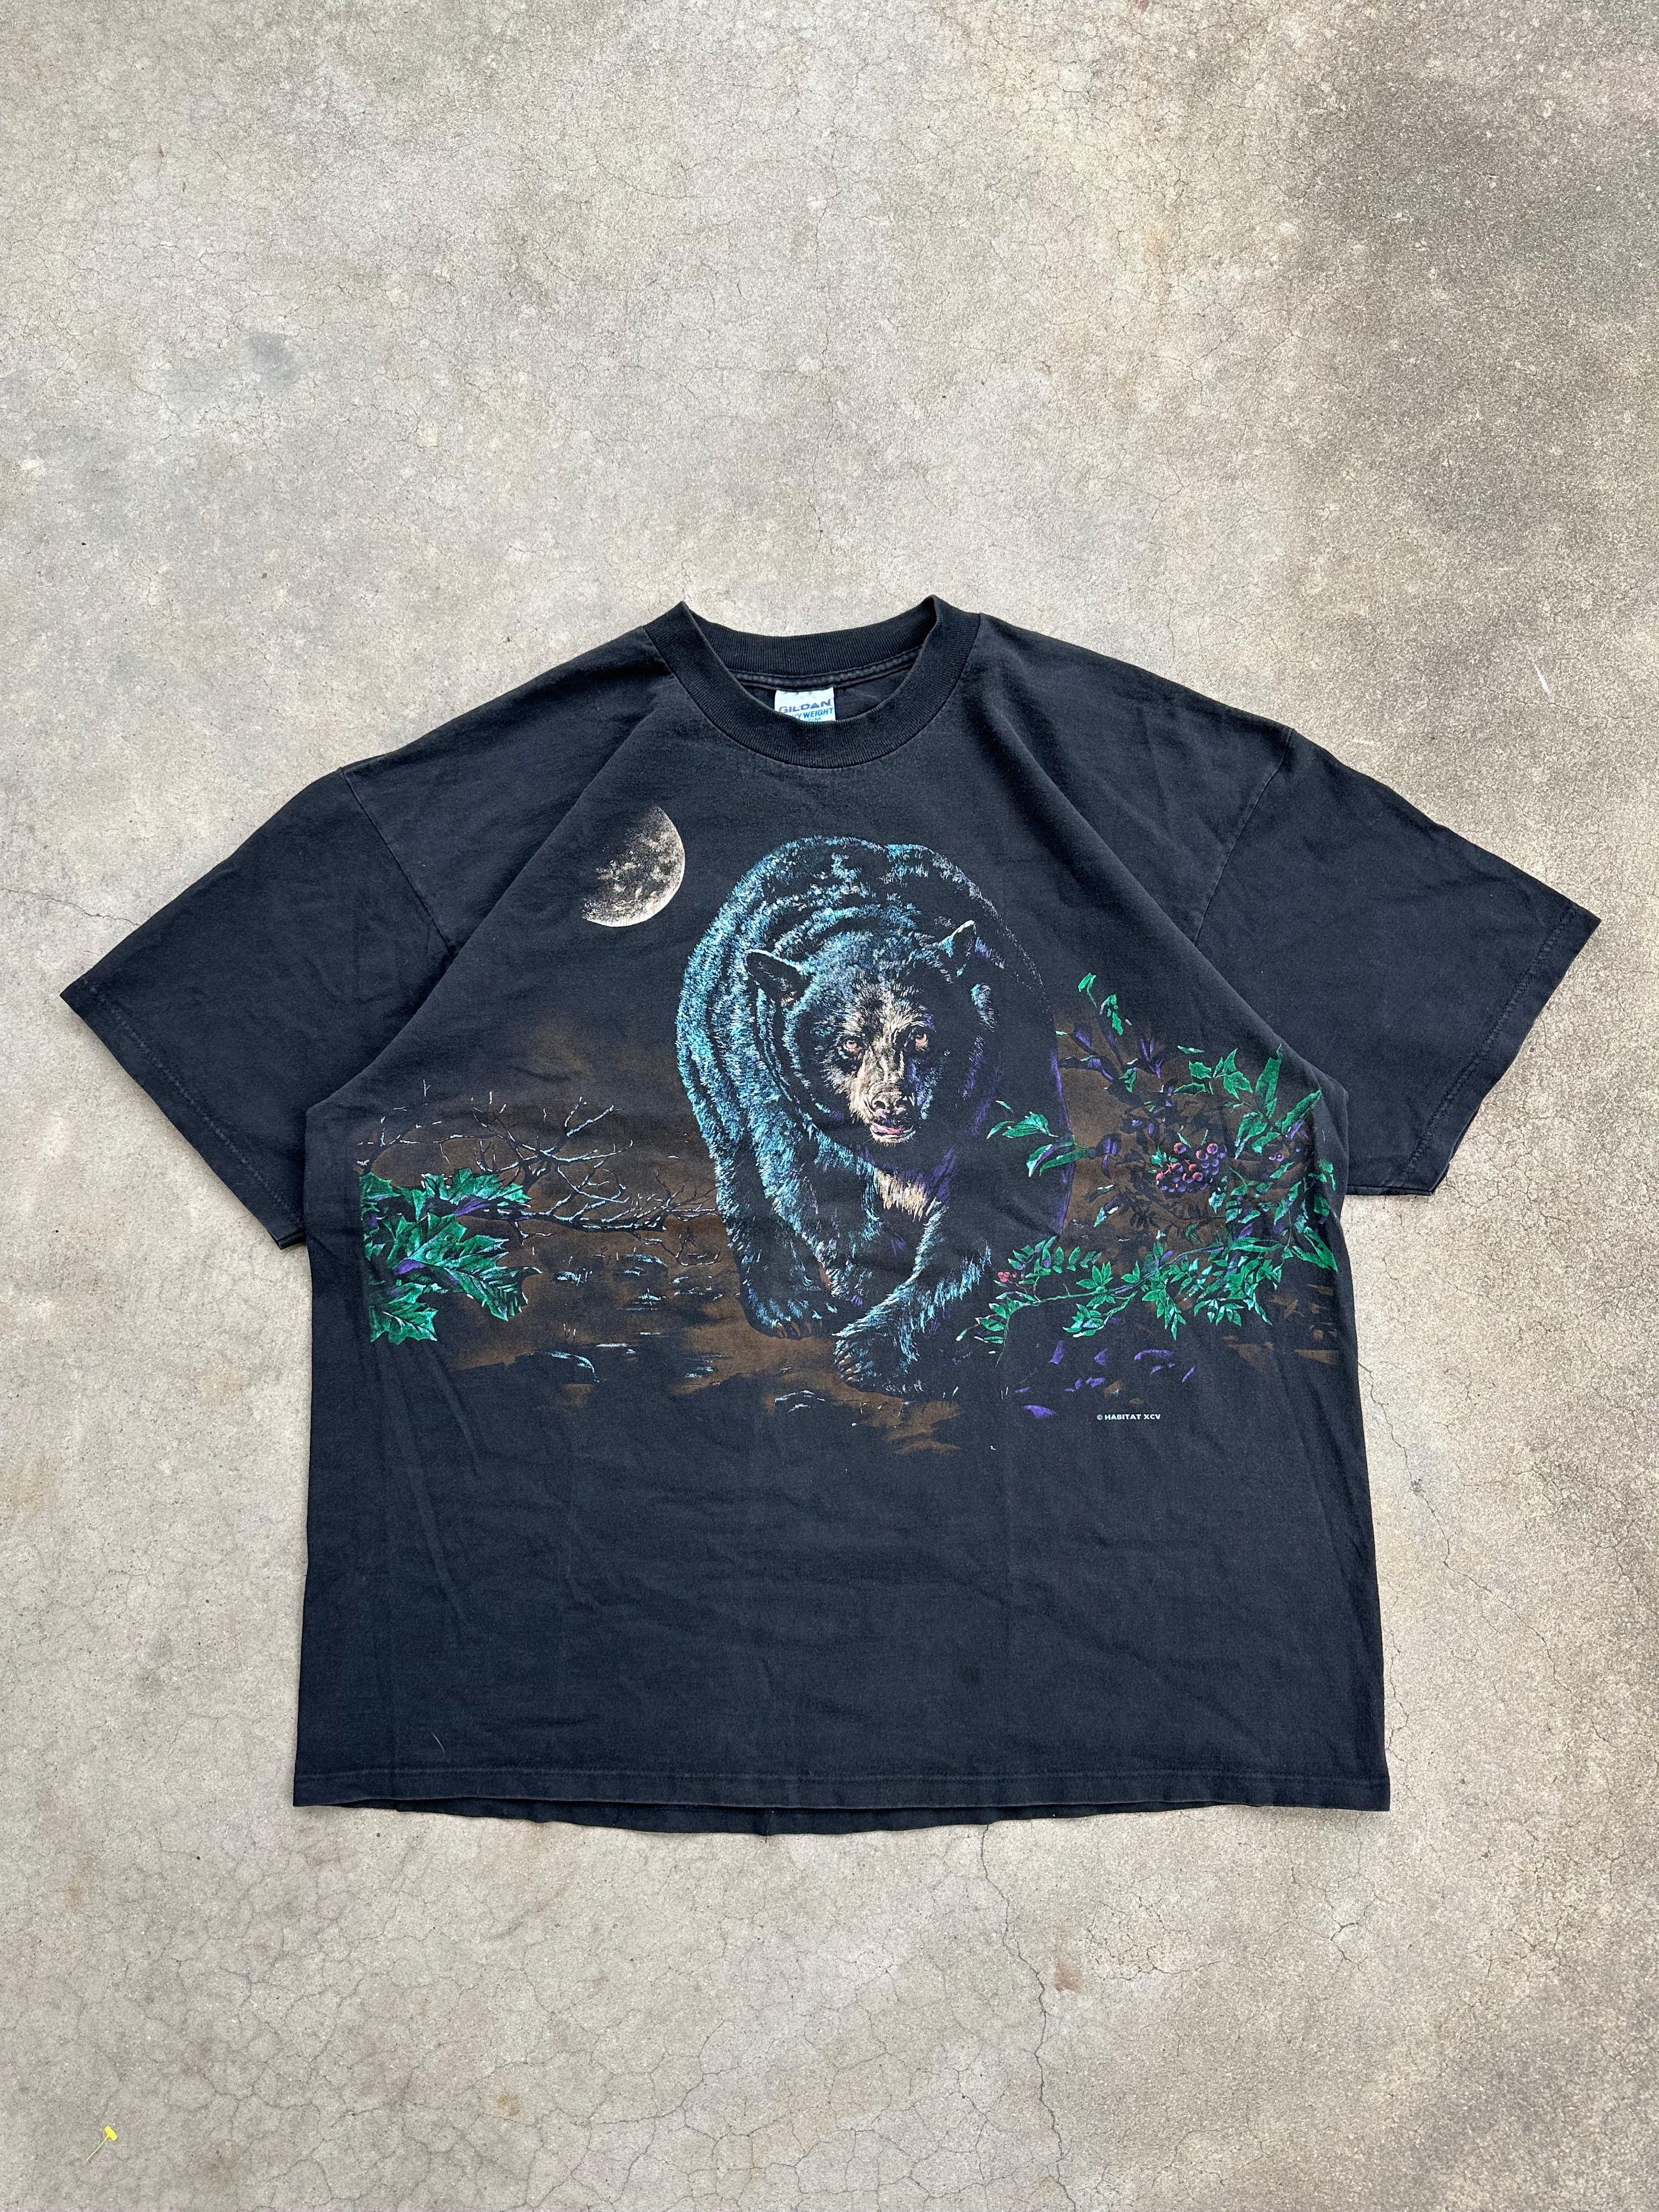 1990s Black Bear Habitat Nature T-Shirt (XXL)